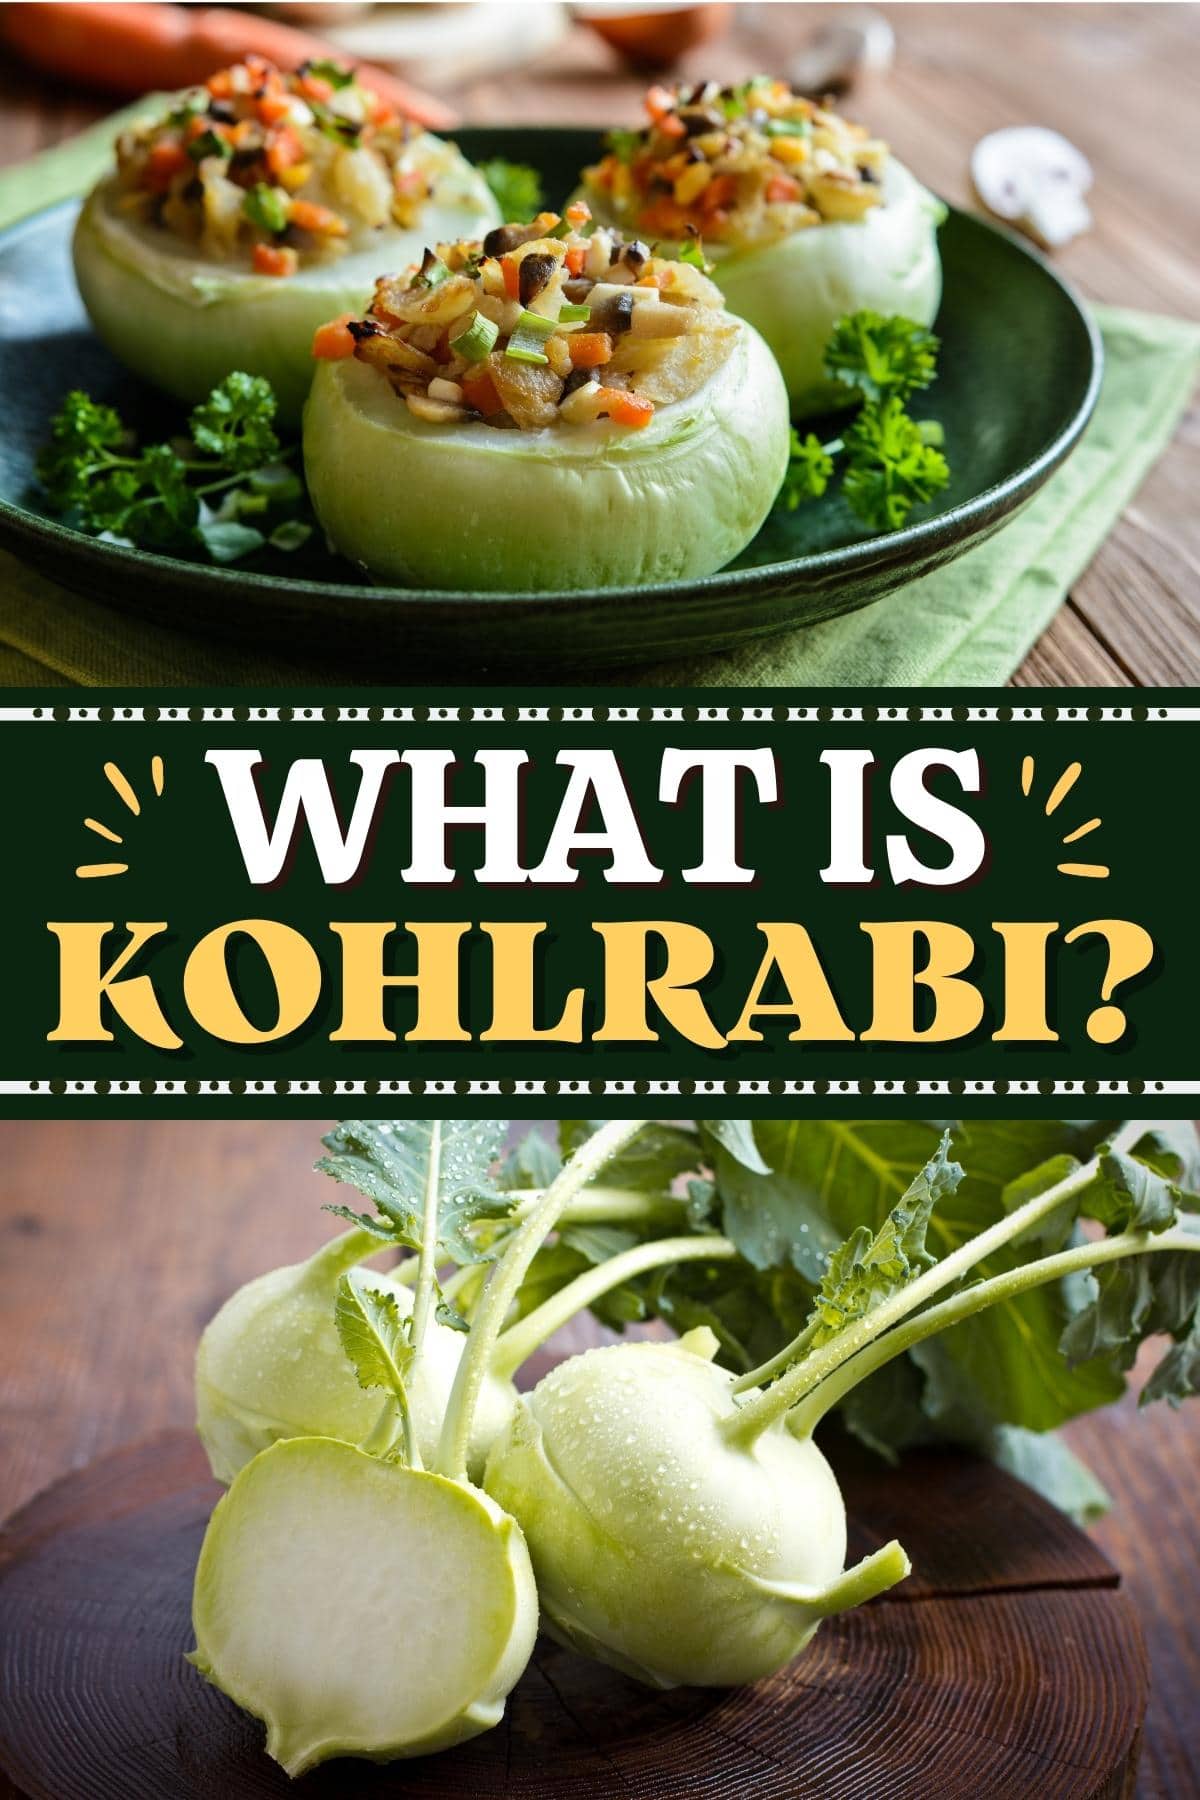 What Is Kohlrabi?